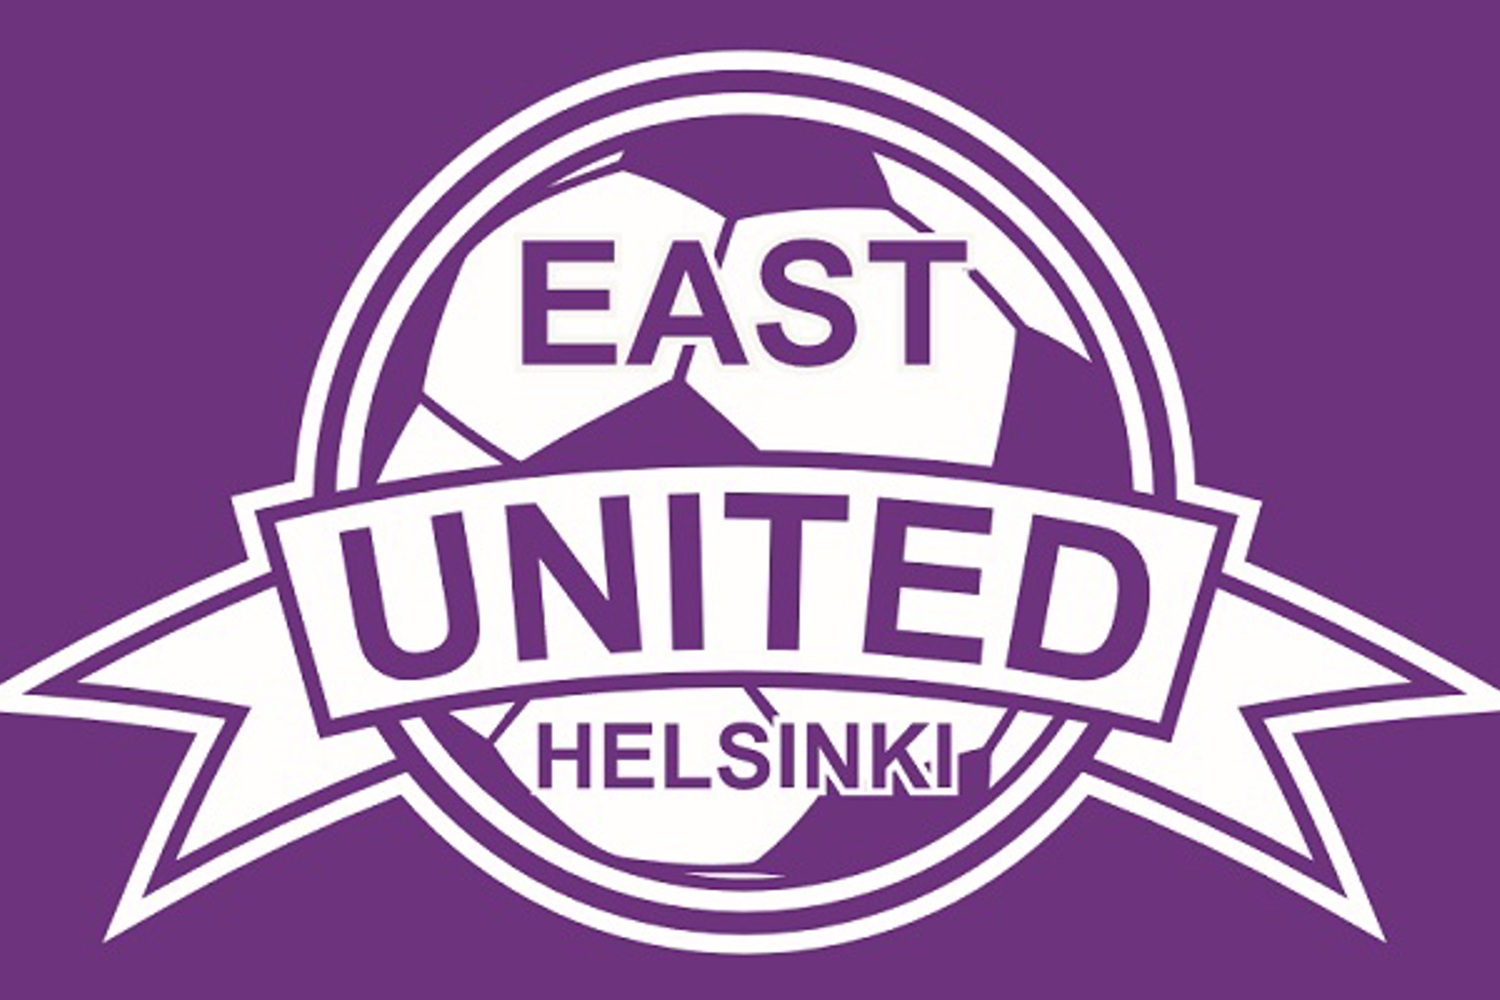 East United yhteistyö